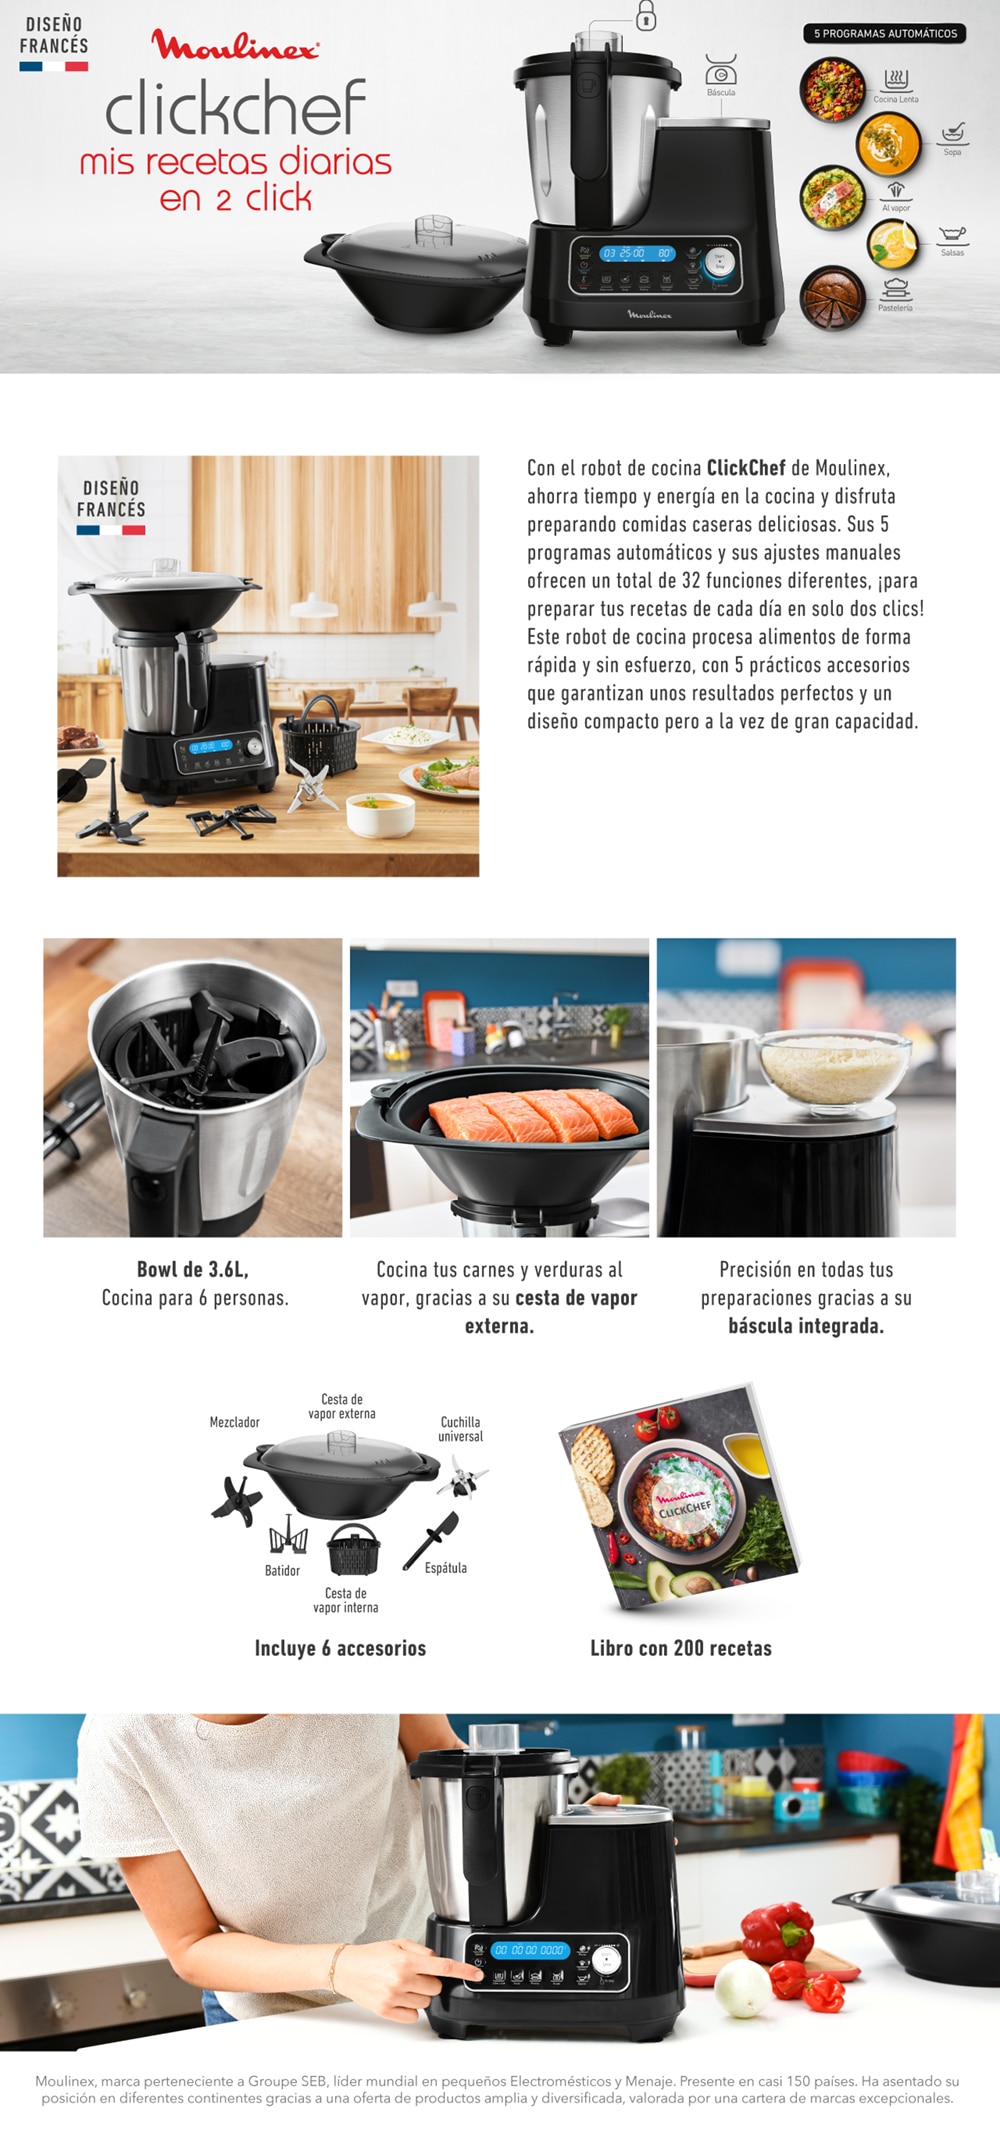 Moulinex ClickChef HF4SPR30 Robot de Cocina con Vaporera Interna y